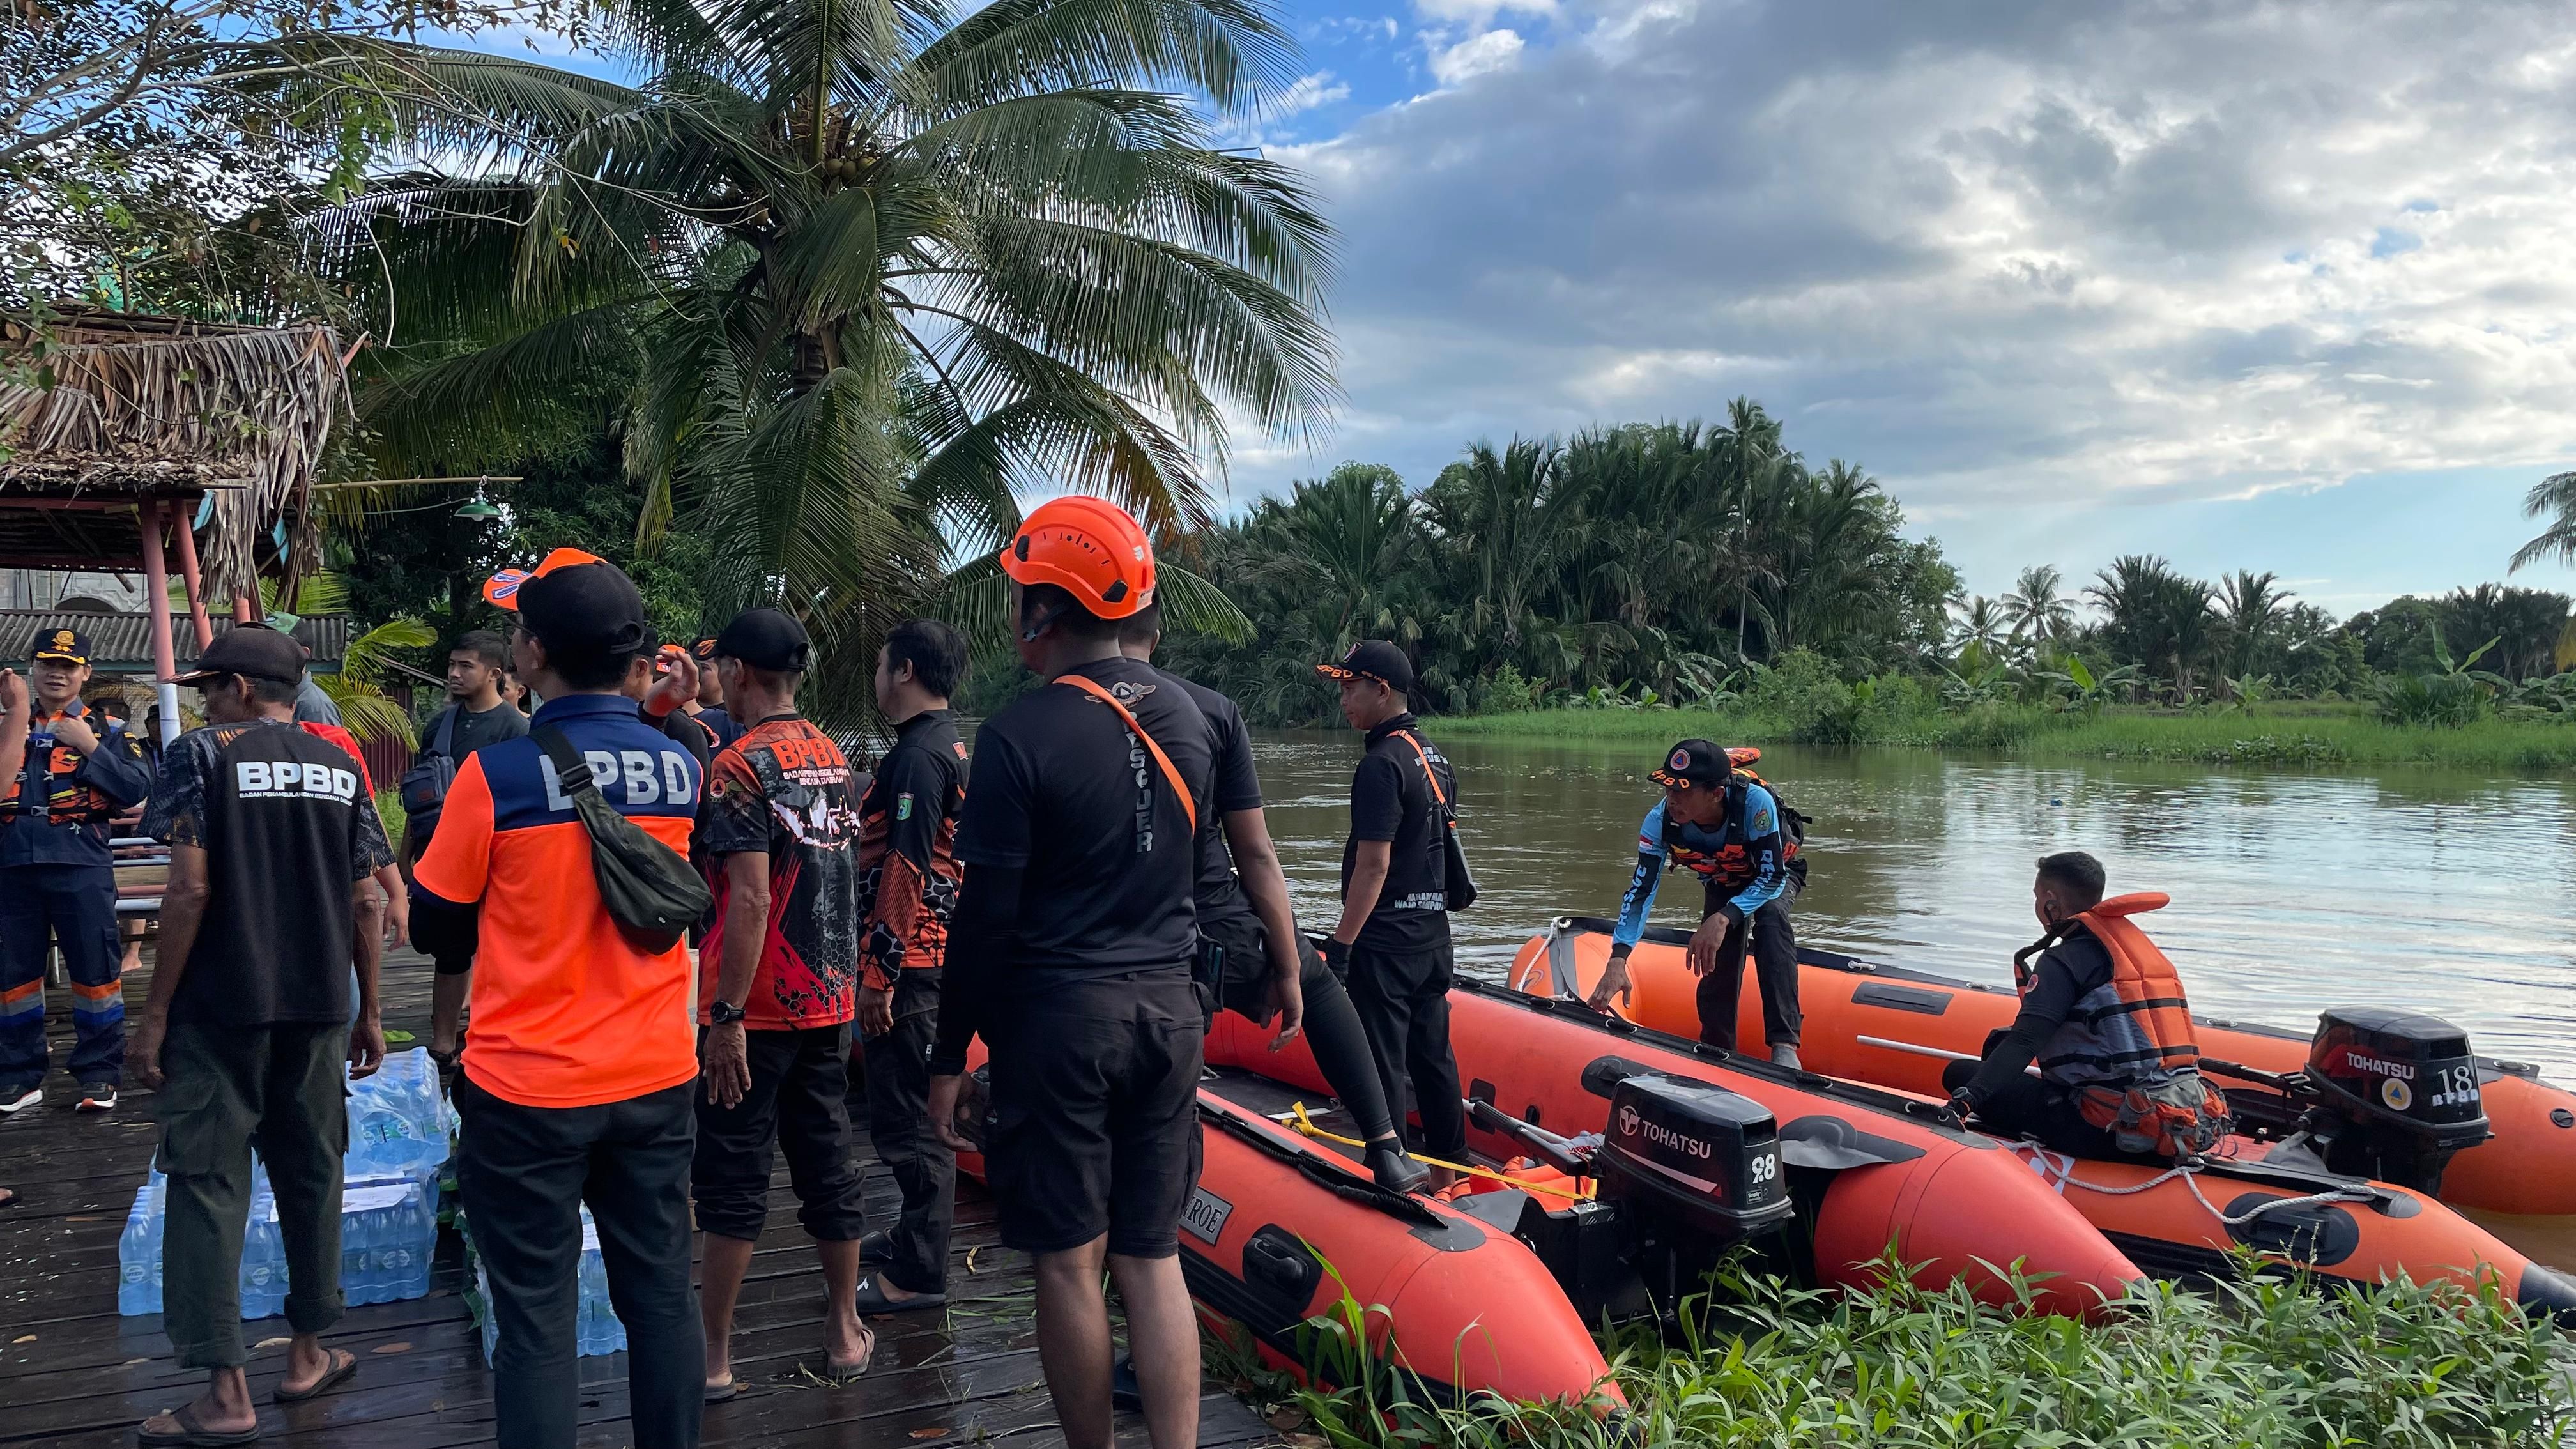 Banjir yang Rendam 7 Kecamatan di Tanah Bumbu Kalsel Surut, Pengungsi Kembali ke Rumah